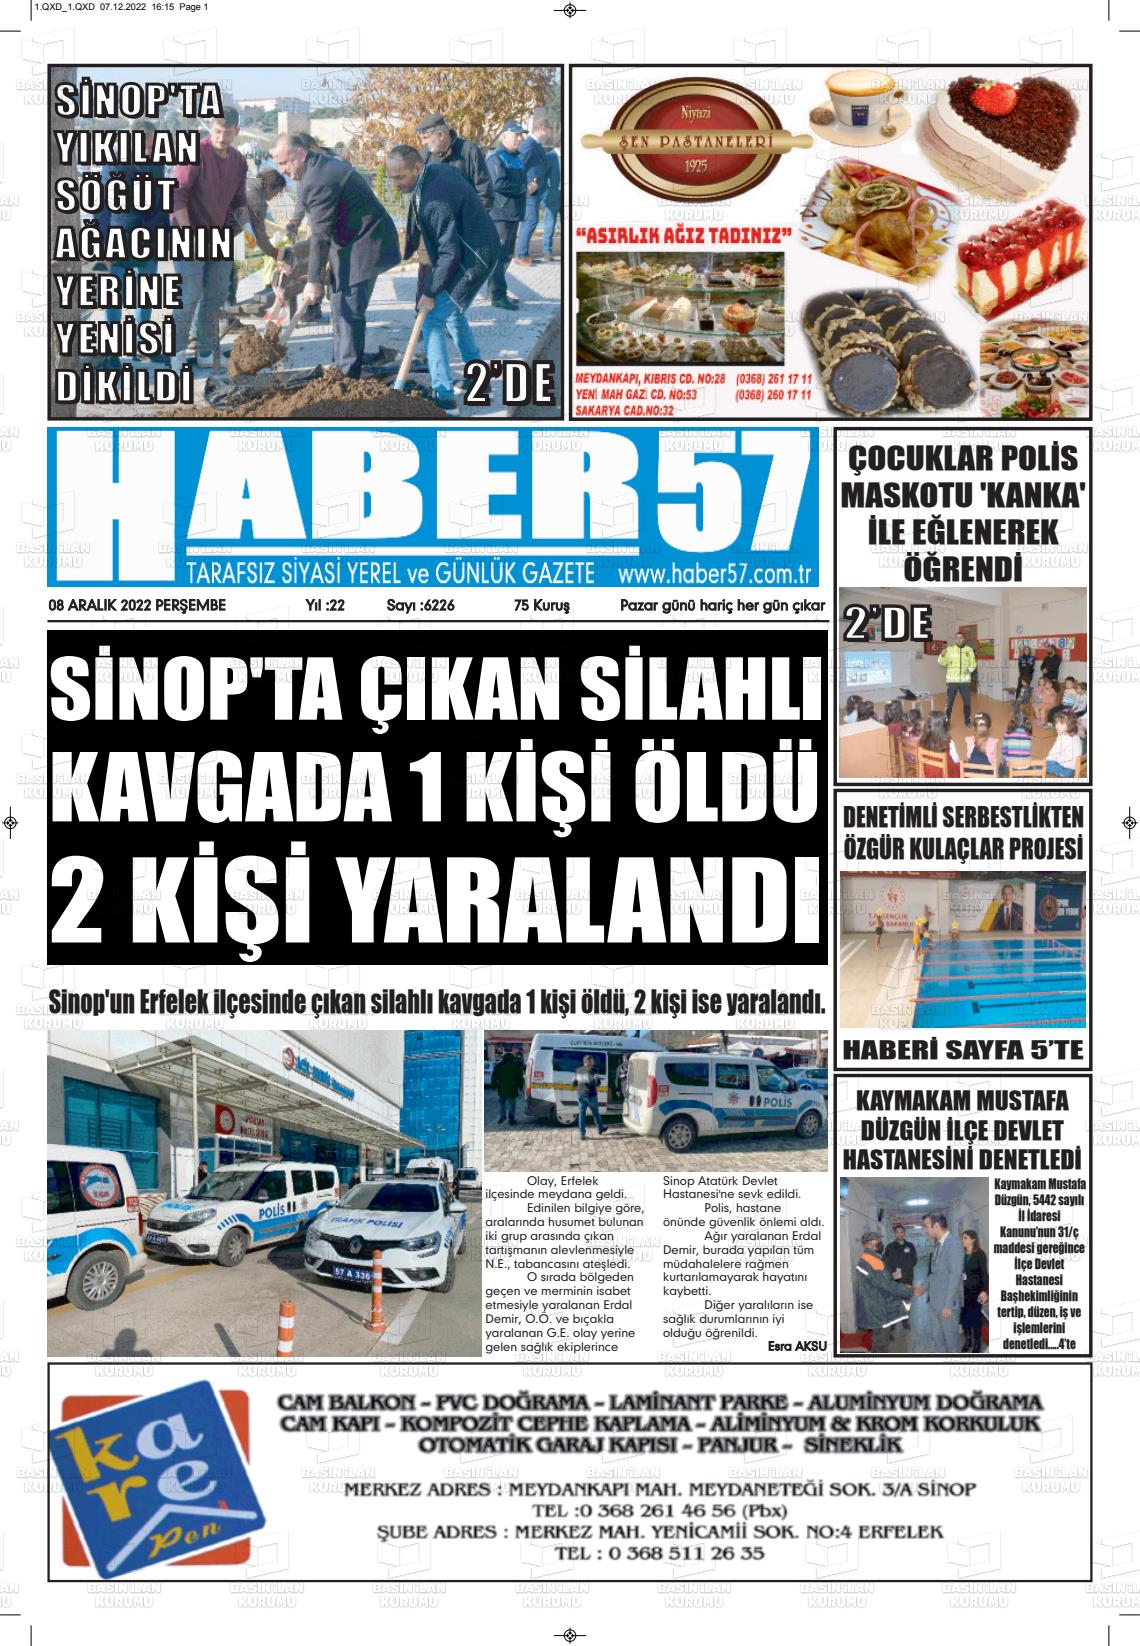 08 Aralık 2022 Haber 57 Gazete Manşeti